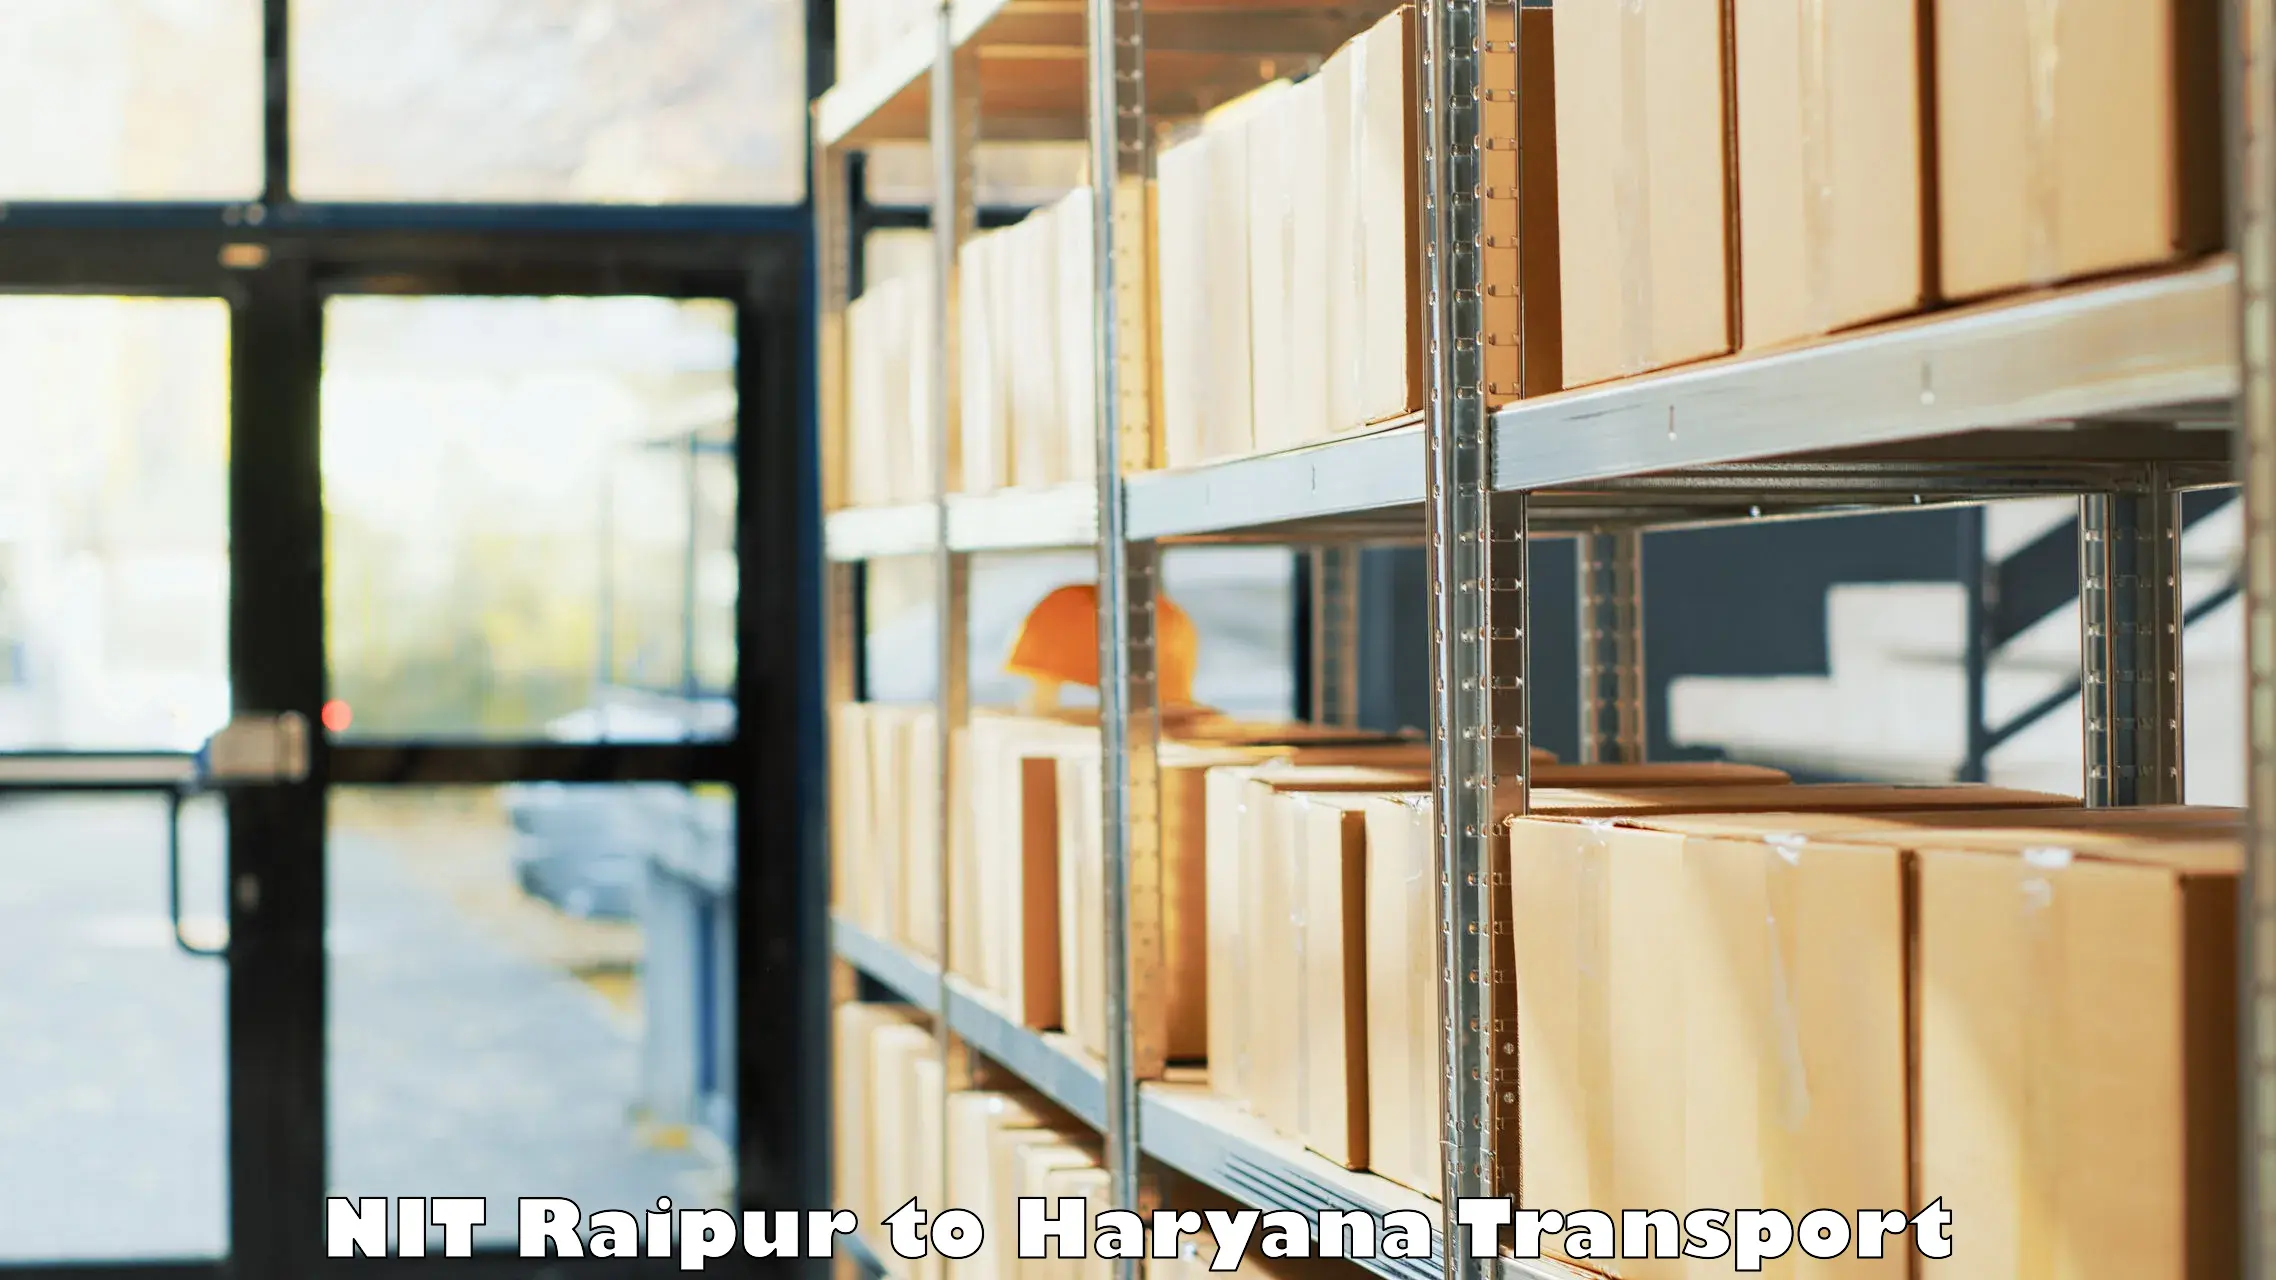 Delivery service NIT Raipur to IIIT Sonepat